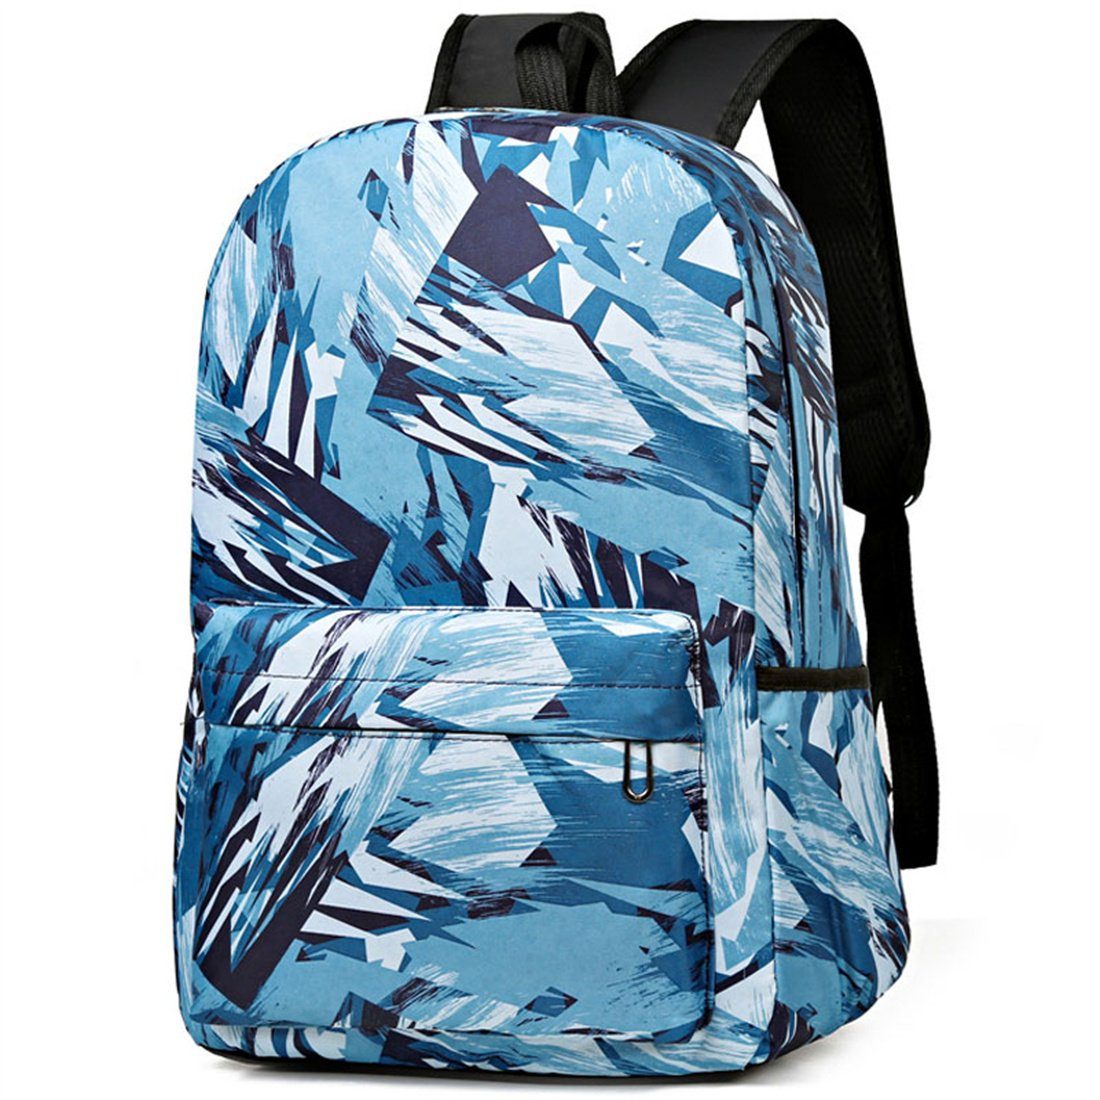 DÖRÖY Schulranzen Große Kapazität Schultasche für Studenten,Schule Mode lässig Rucksäcke blau